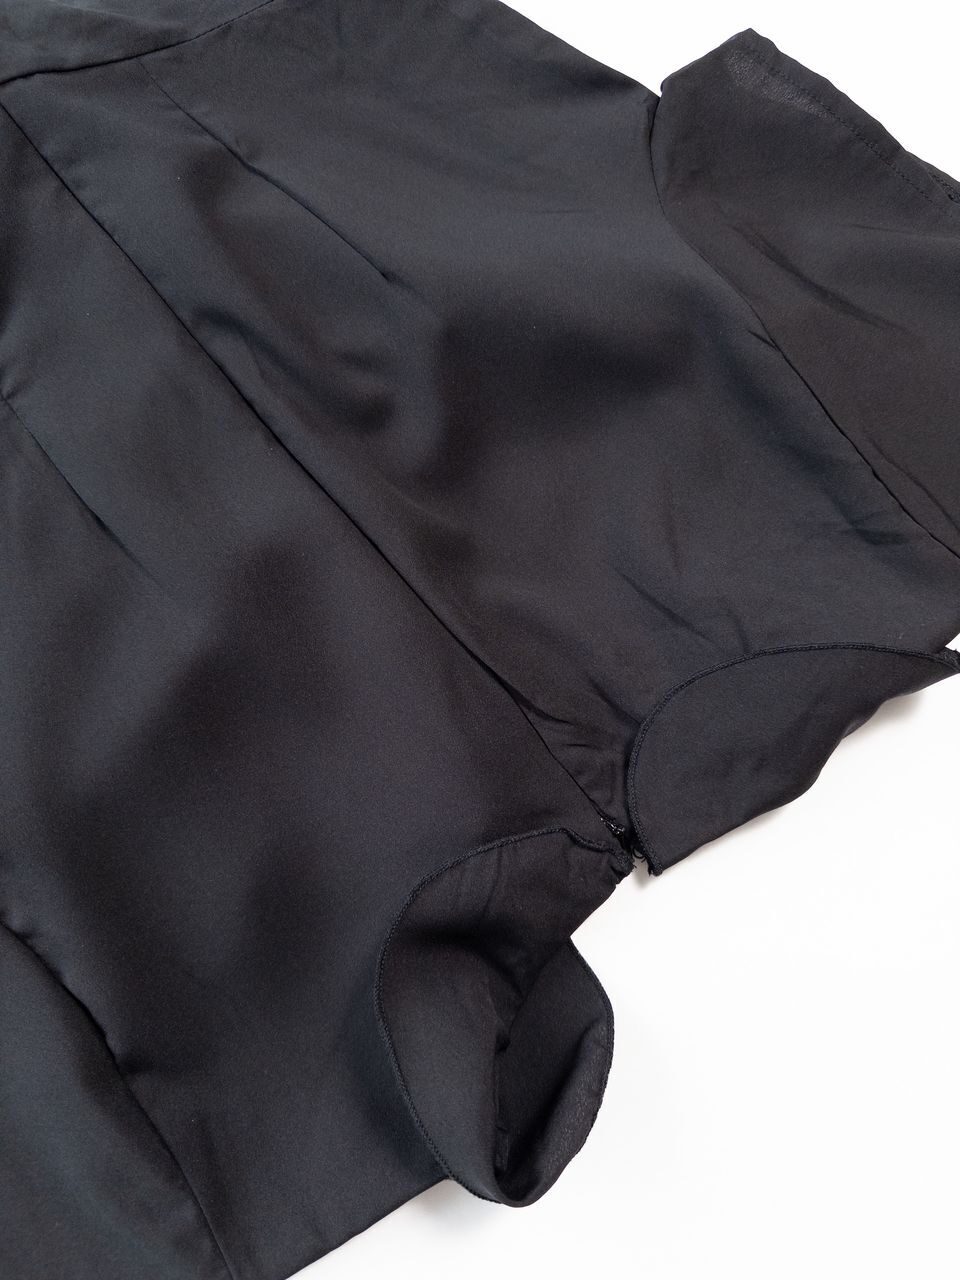 Платье легкое сзади на молнии цвет черный размер EUR 40 (rus 46) MISSGUIDED